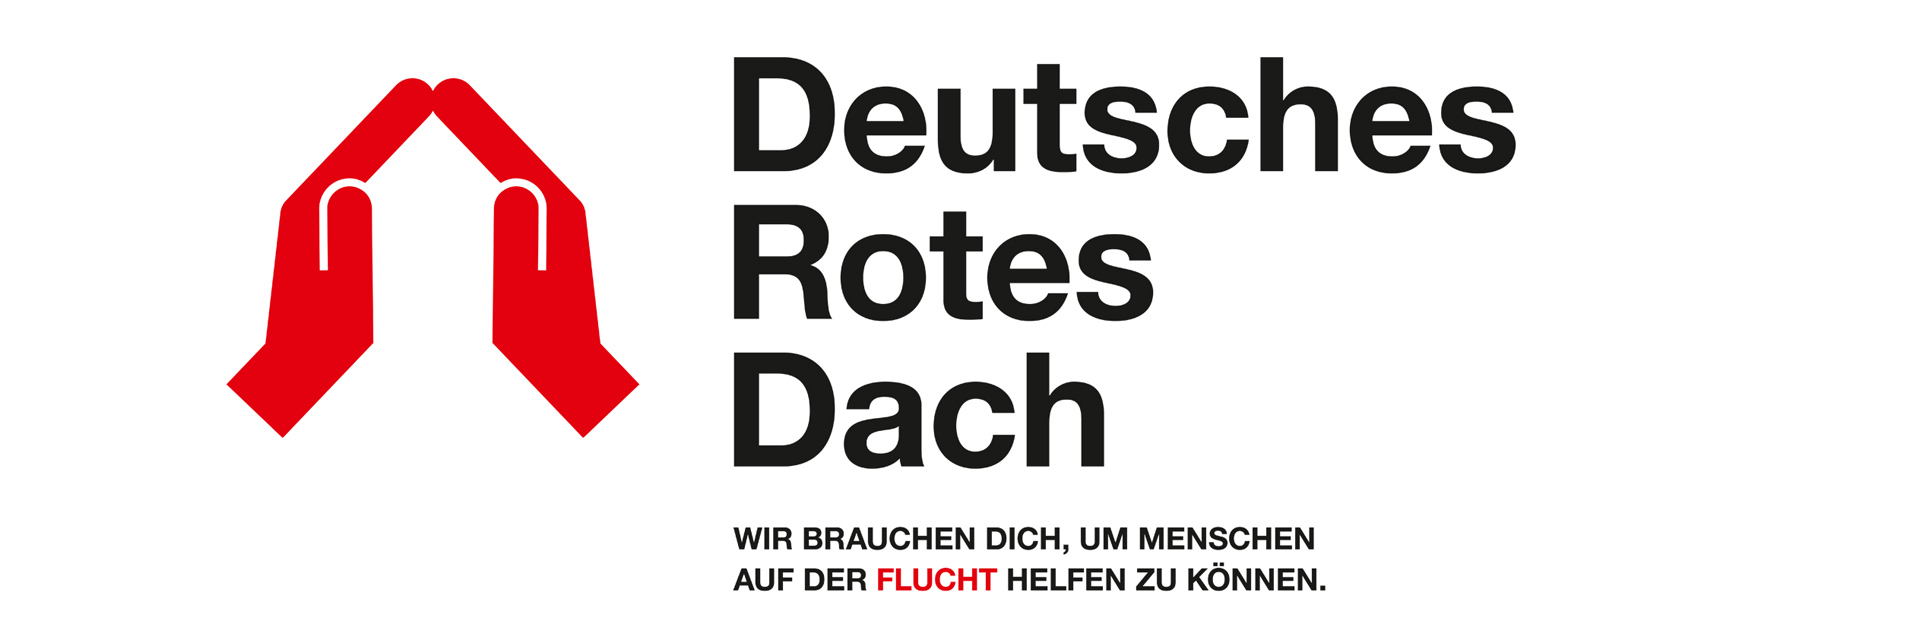 Grafik: DRK-Kampagnenmotiv "Deutsches Rotes Dach" mit Dach-Piktogramm, dargestellt aus zwei Händen 